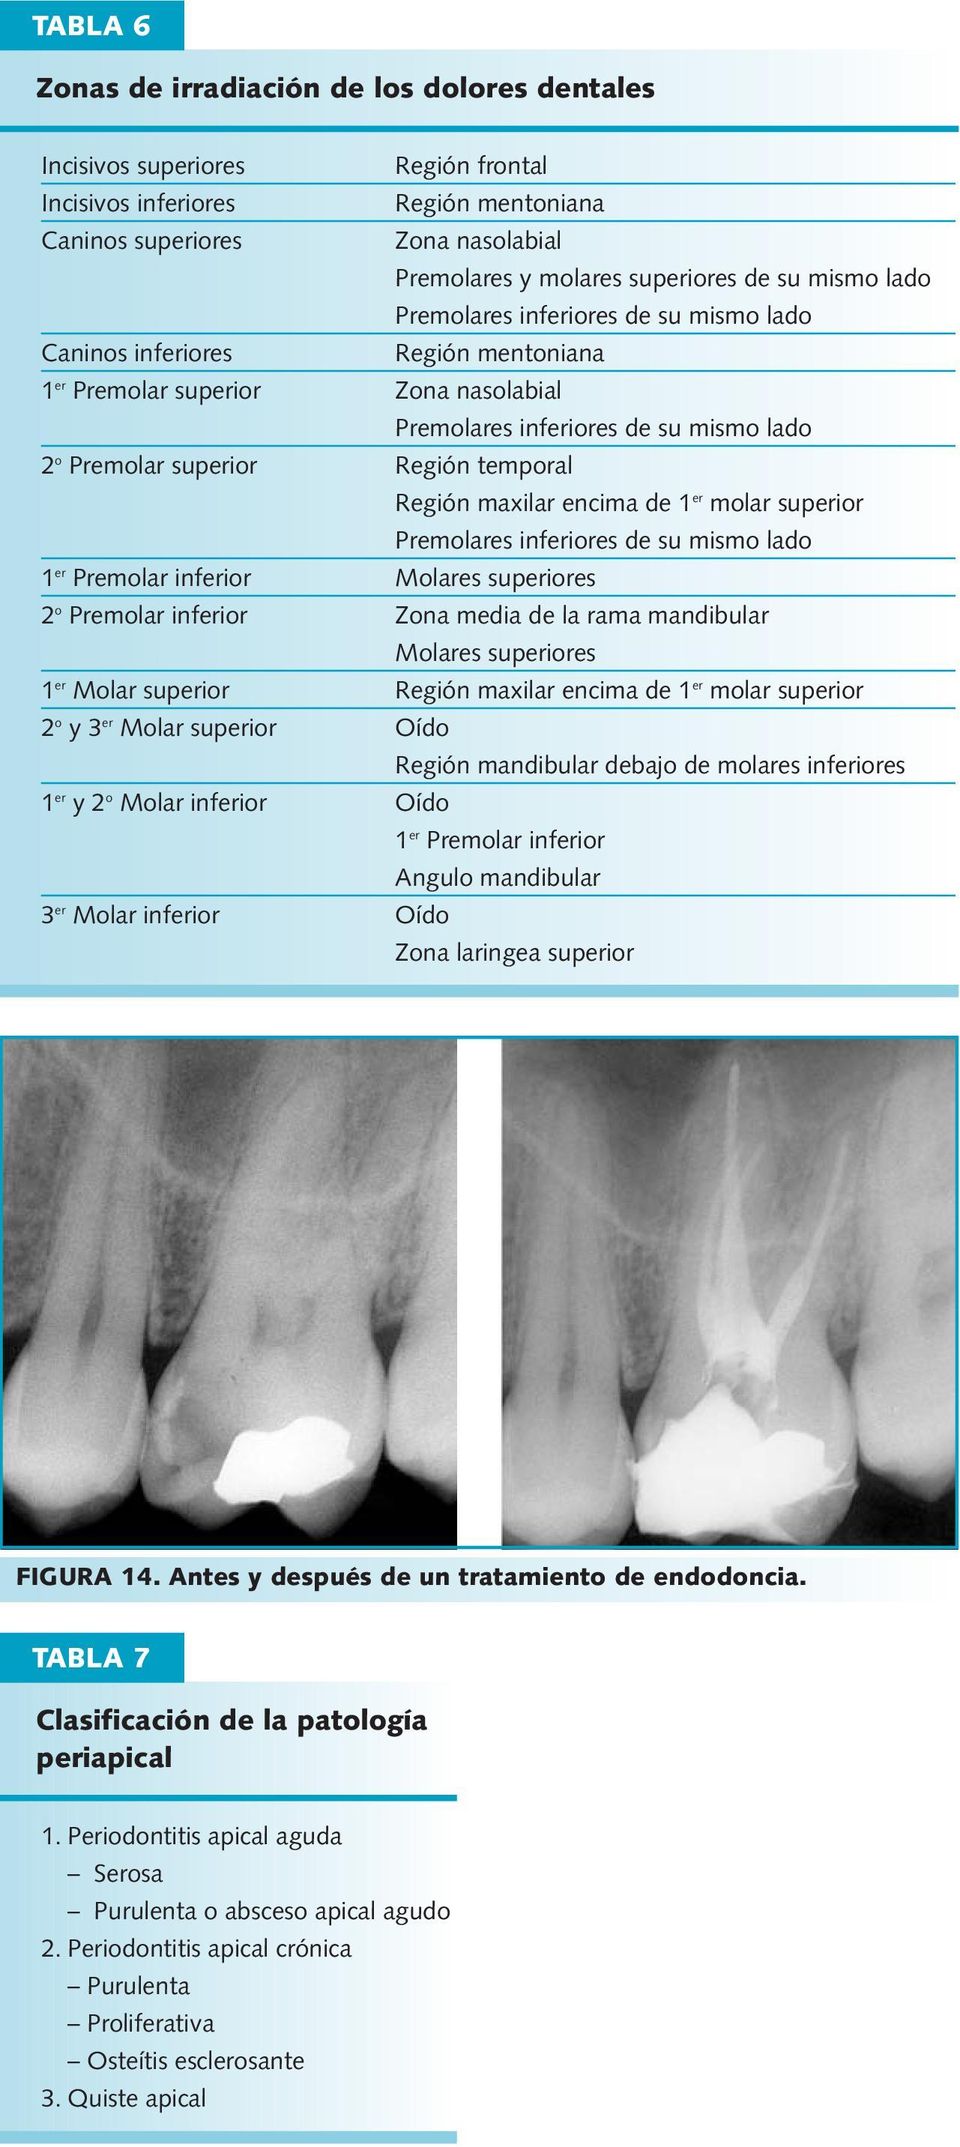 temporal Región maxilar encima de 1 er molar superior Premolares inferiores de su mismo lado 1 er Premolar inferior Molares superiores 2 o Premolar inferior Zona media de la rama mandibular Molares